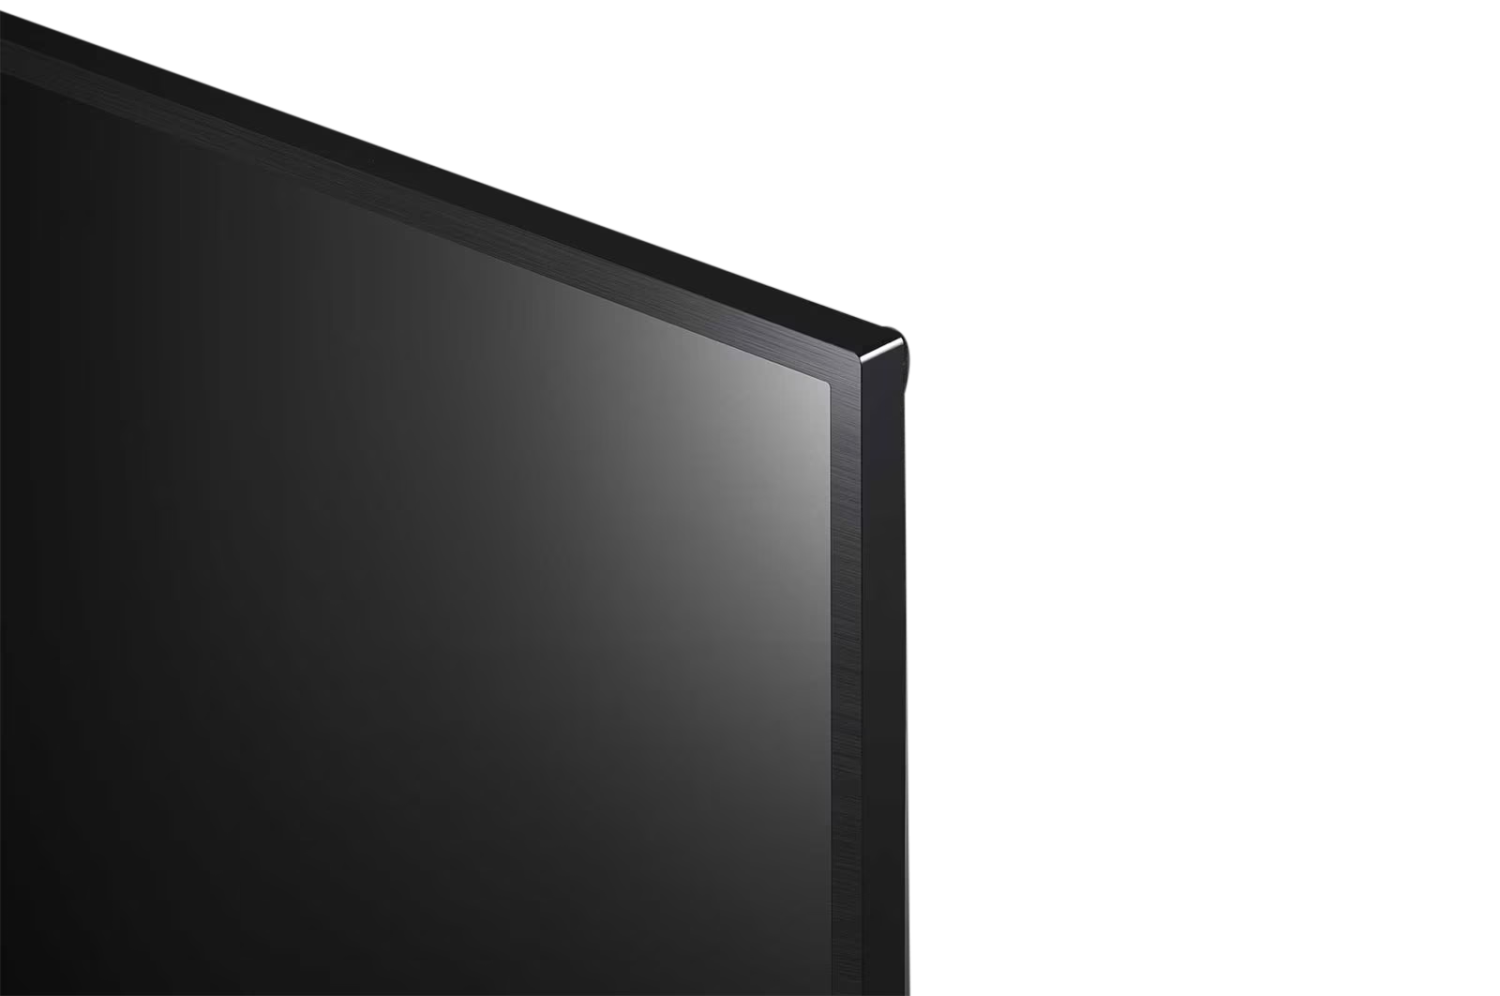 LG 43" 4K Smart LED TV UQ7550 thumbnail